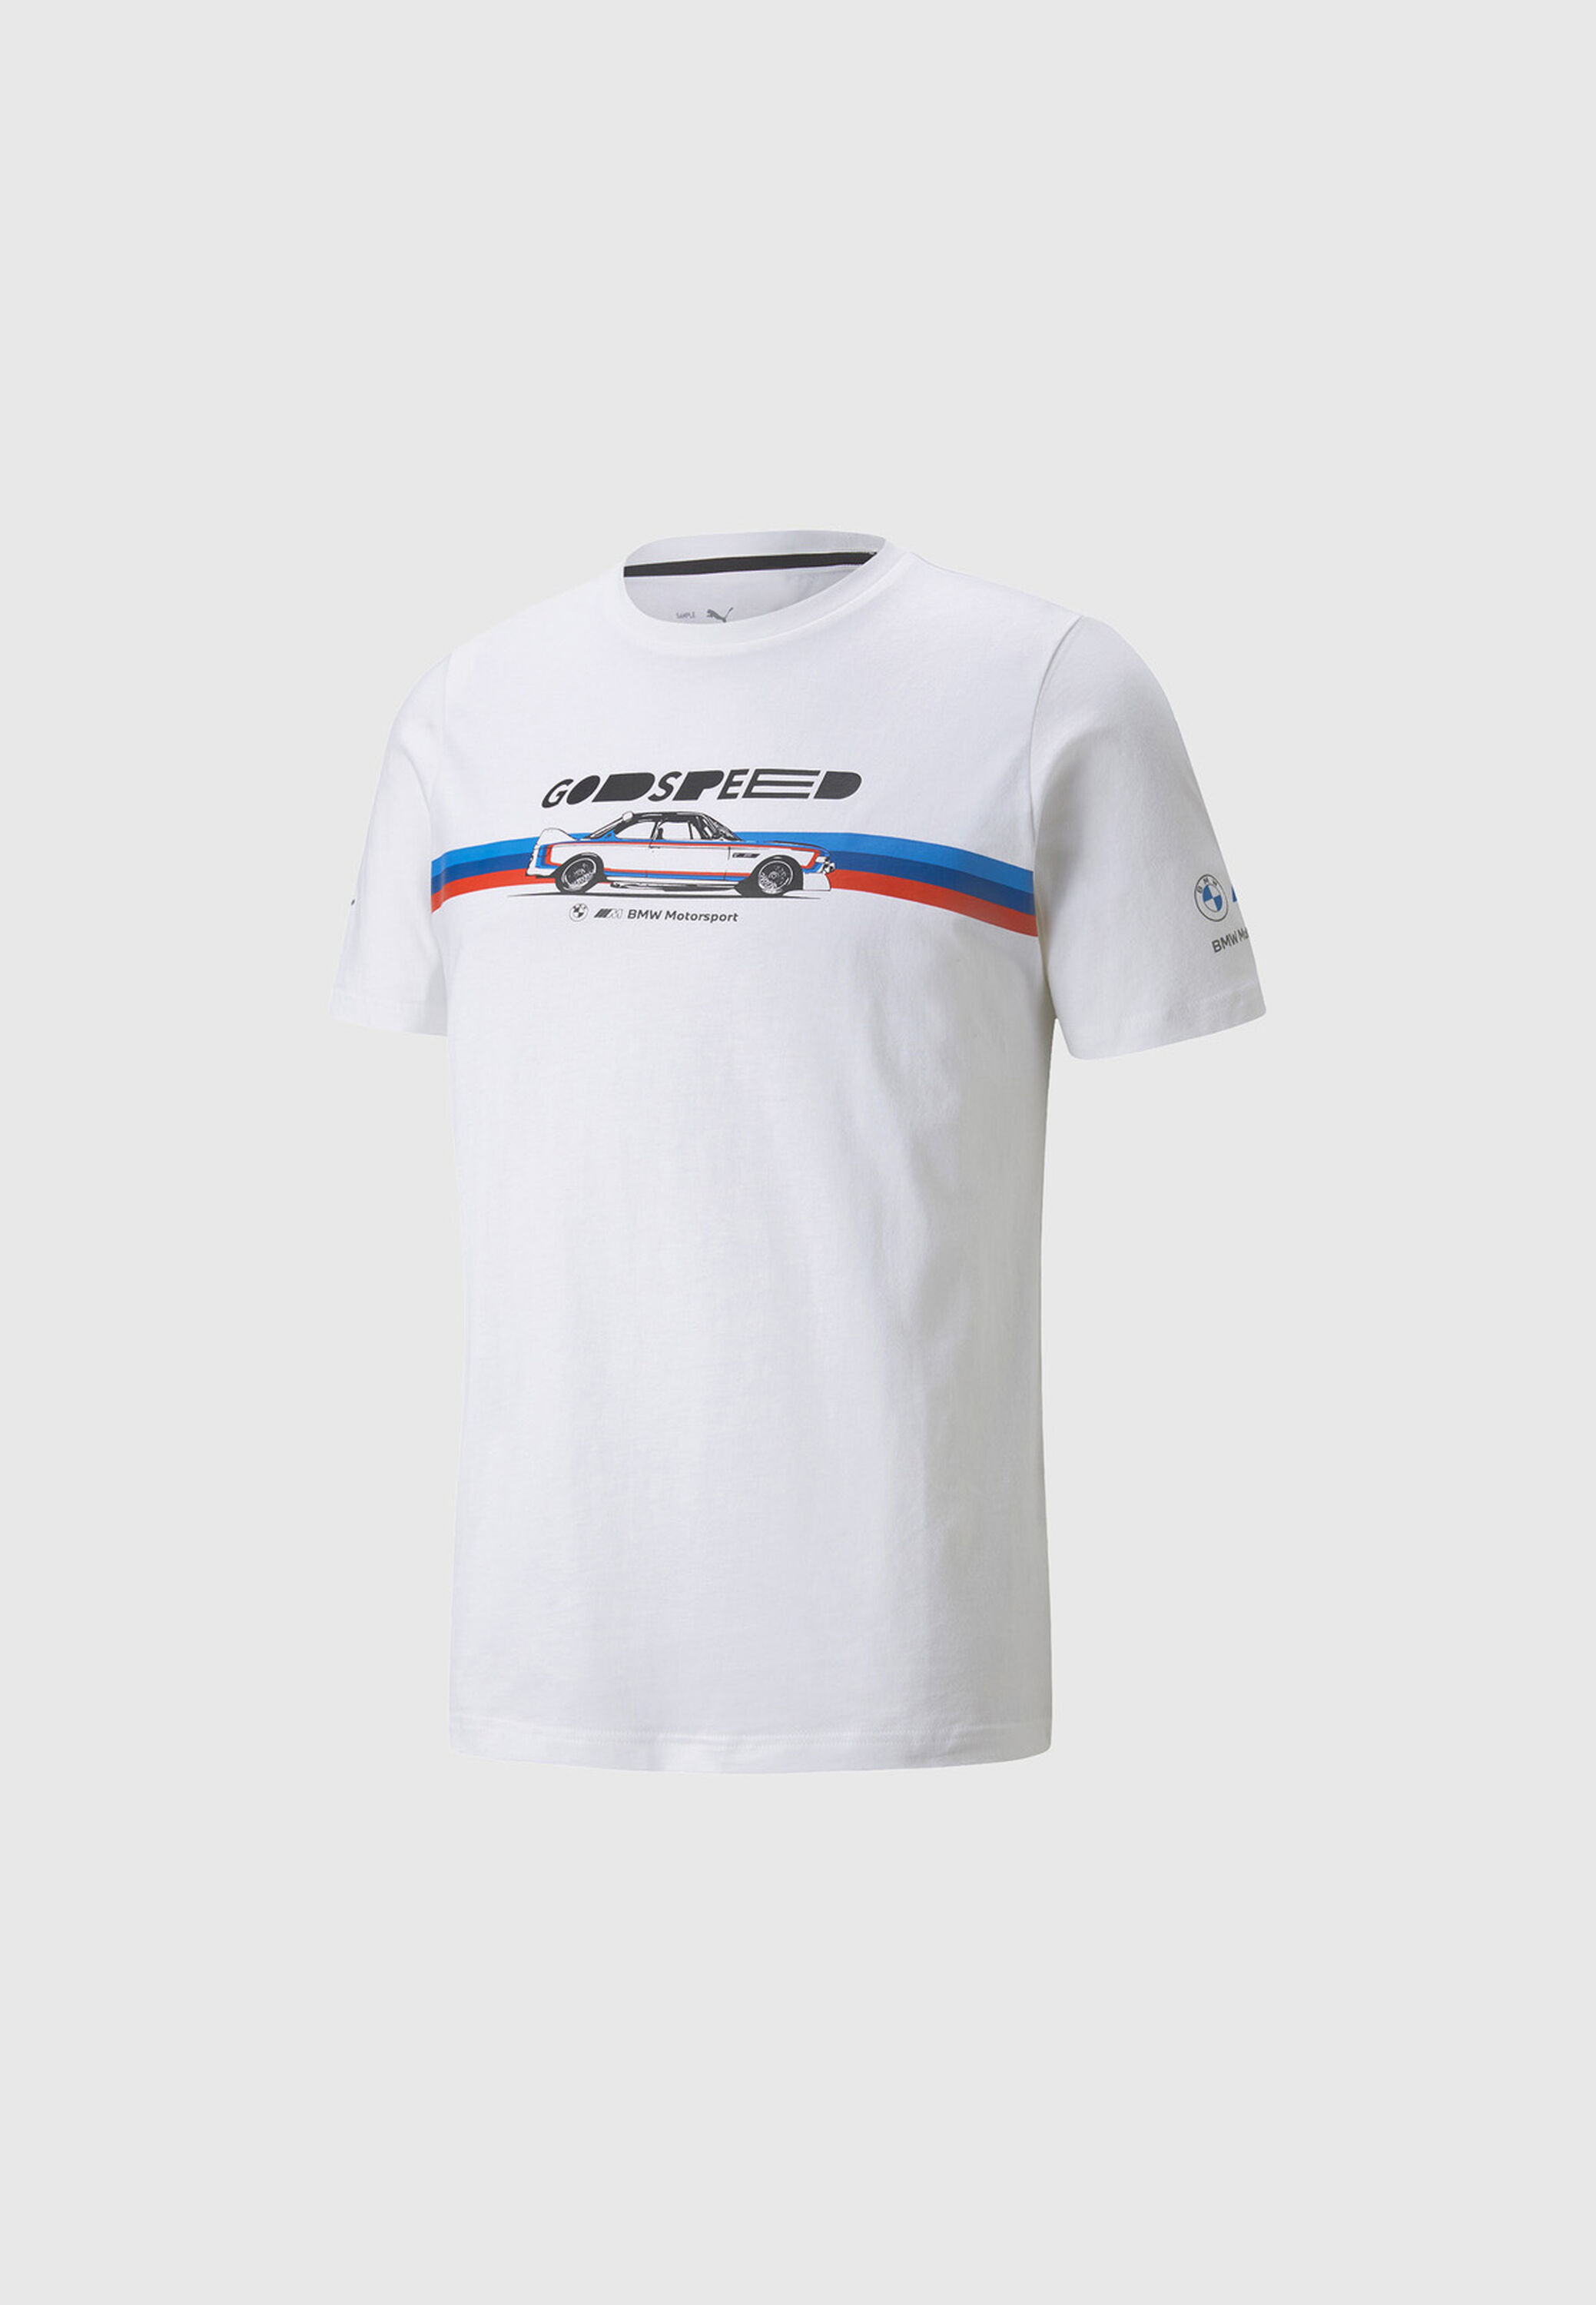 Comprar Camiseta BMW Motorsport MT7 Blanca. Disponible en blanco, hombre